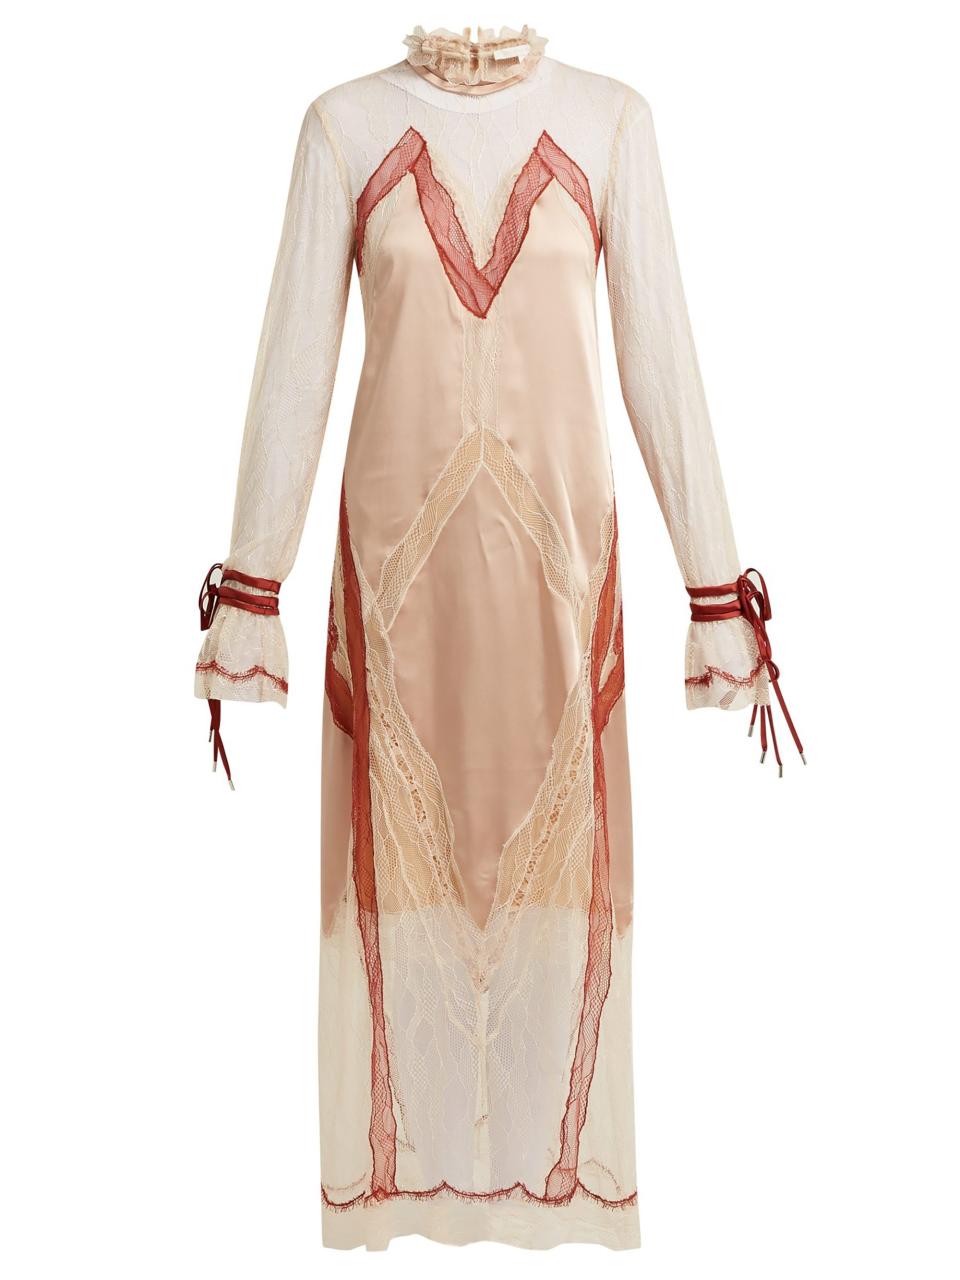 Jonatham Simkhai satin dress (£1,935)